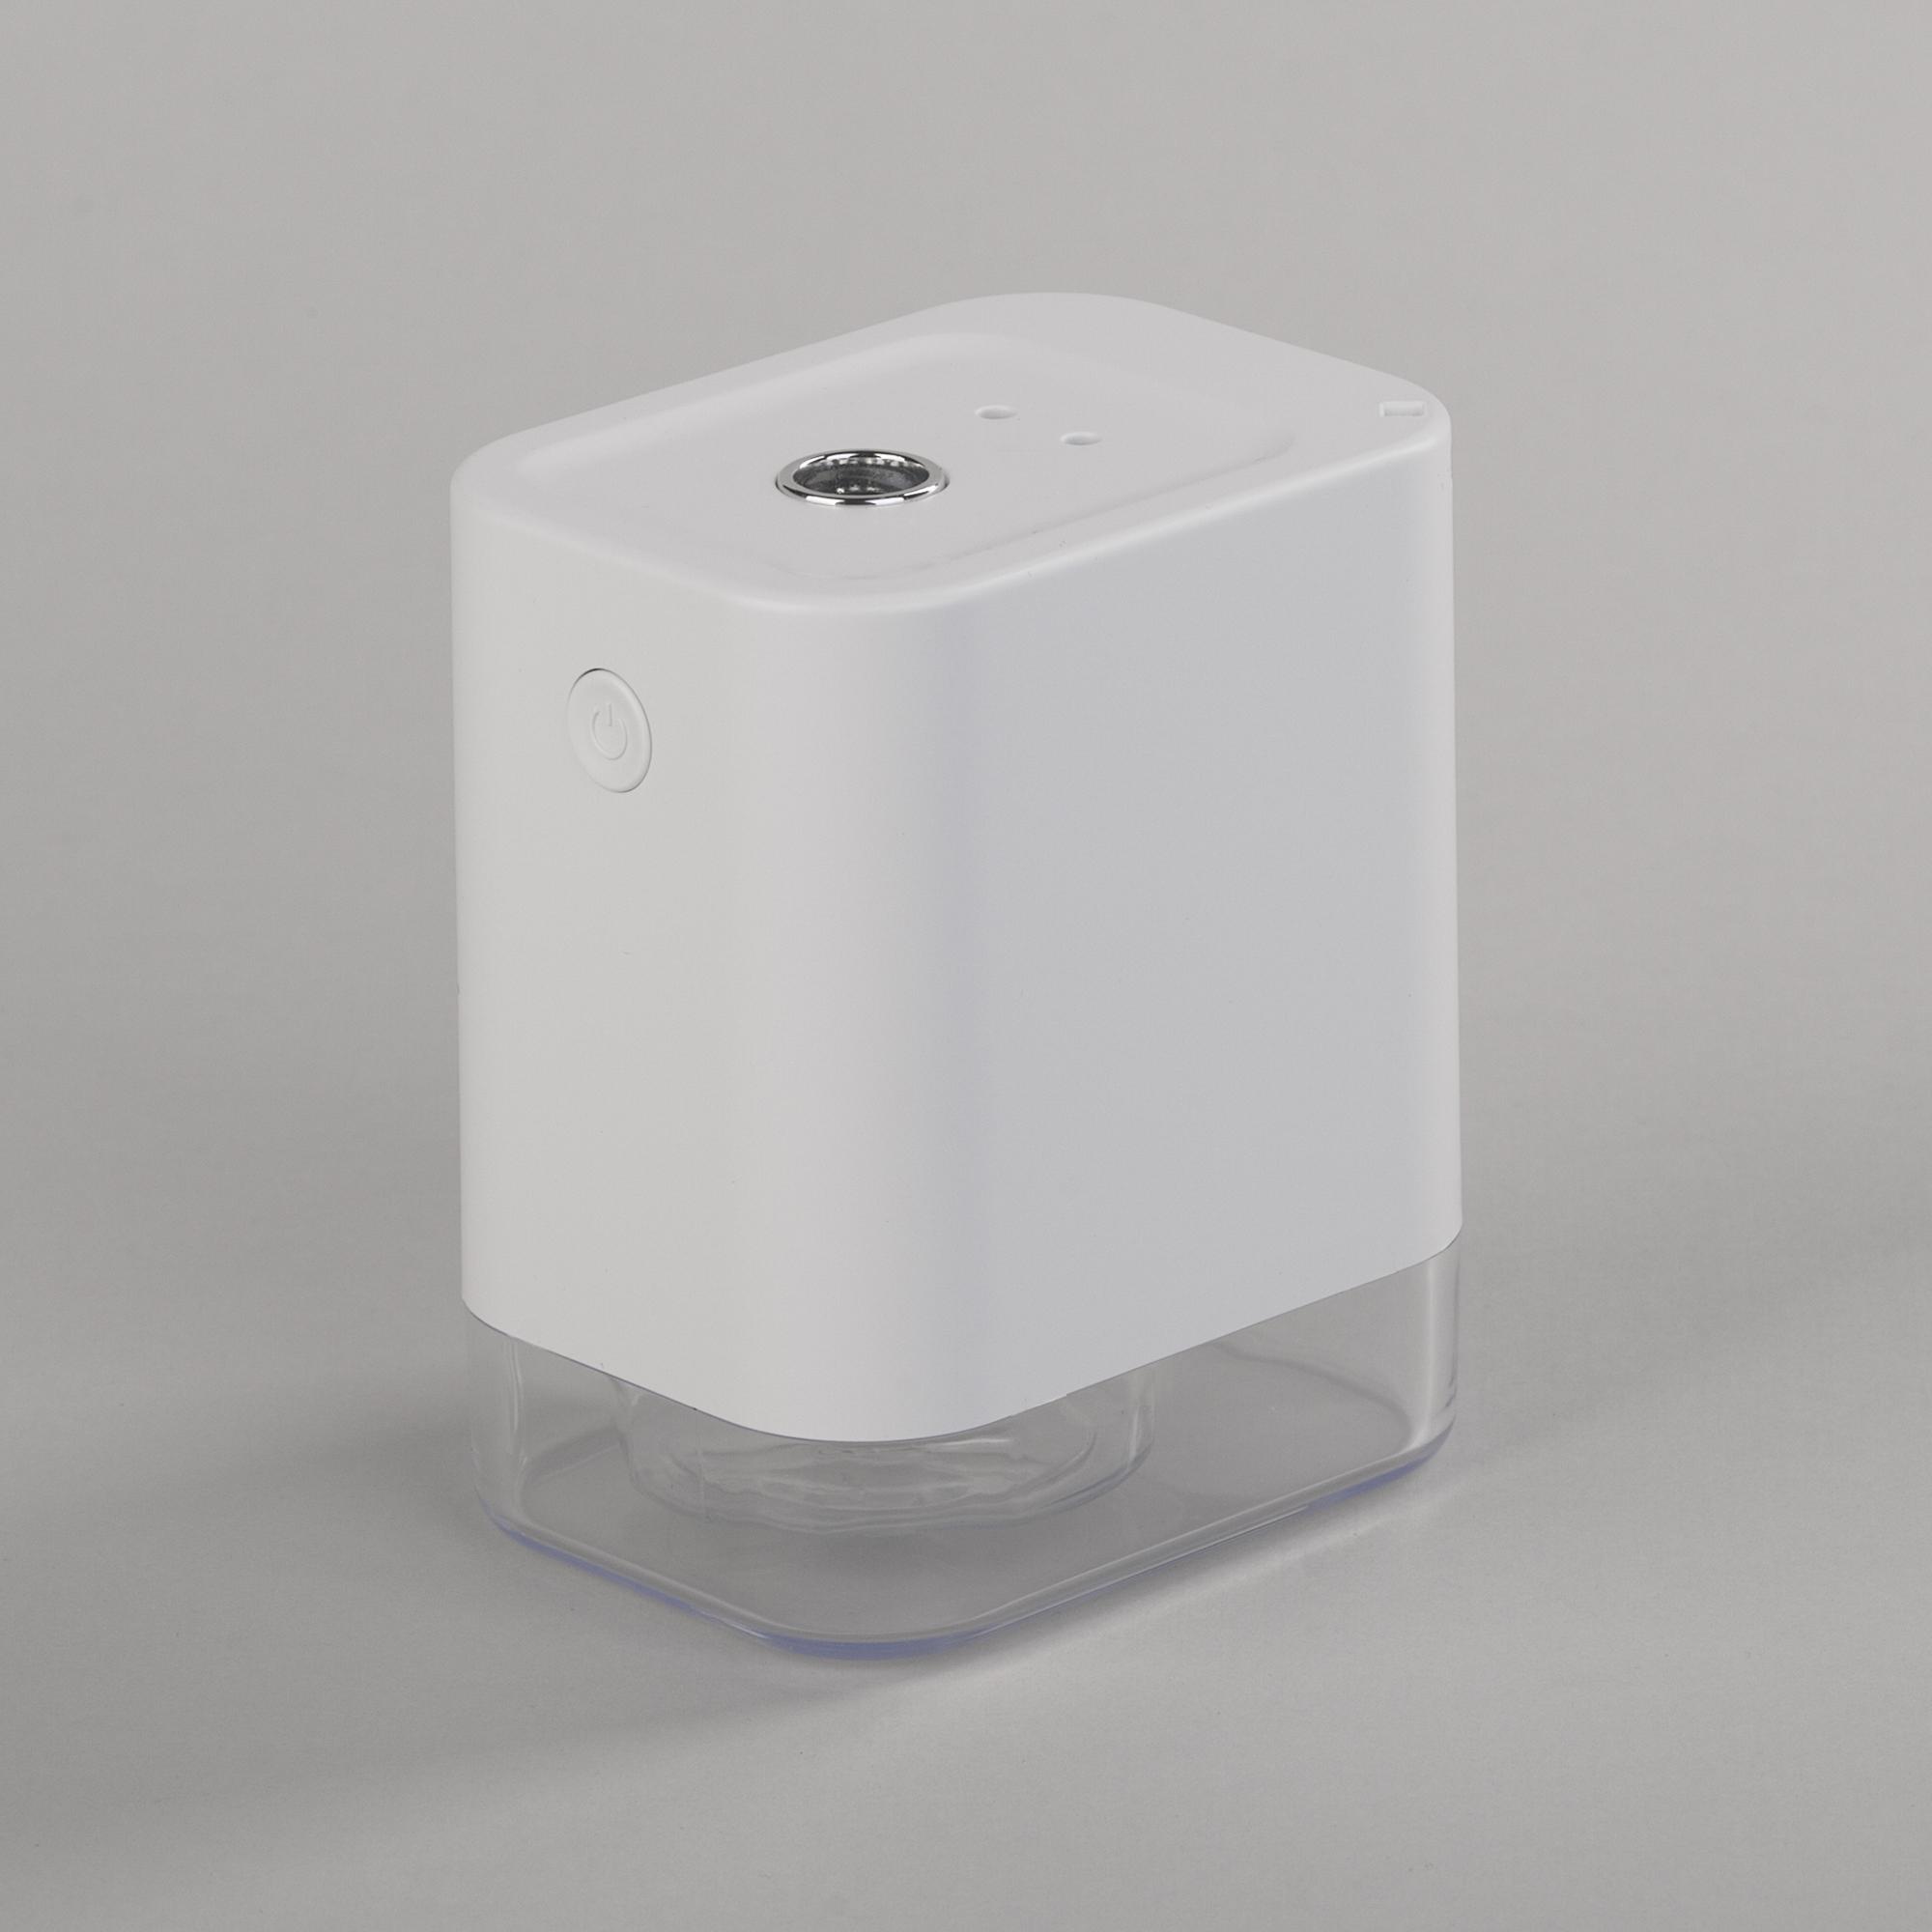 Портативный увлажнитель воздуха "Smart Wind" с двумя вентиляторами, цвет белый - купить оптом